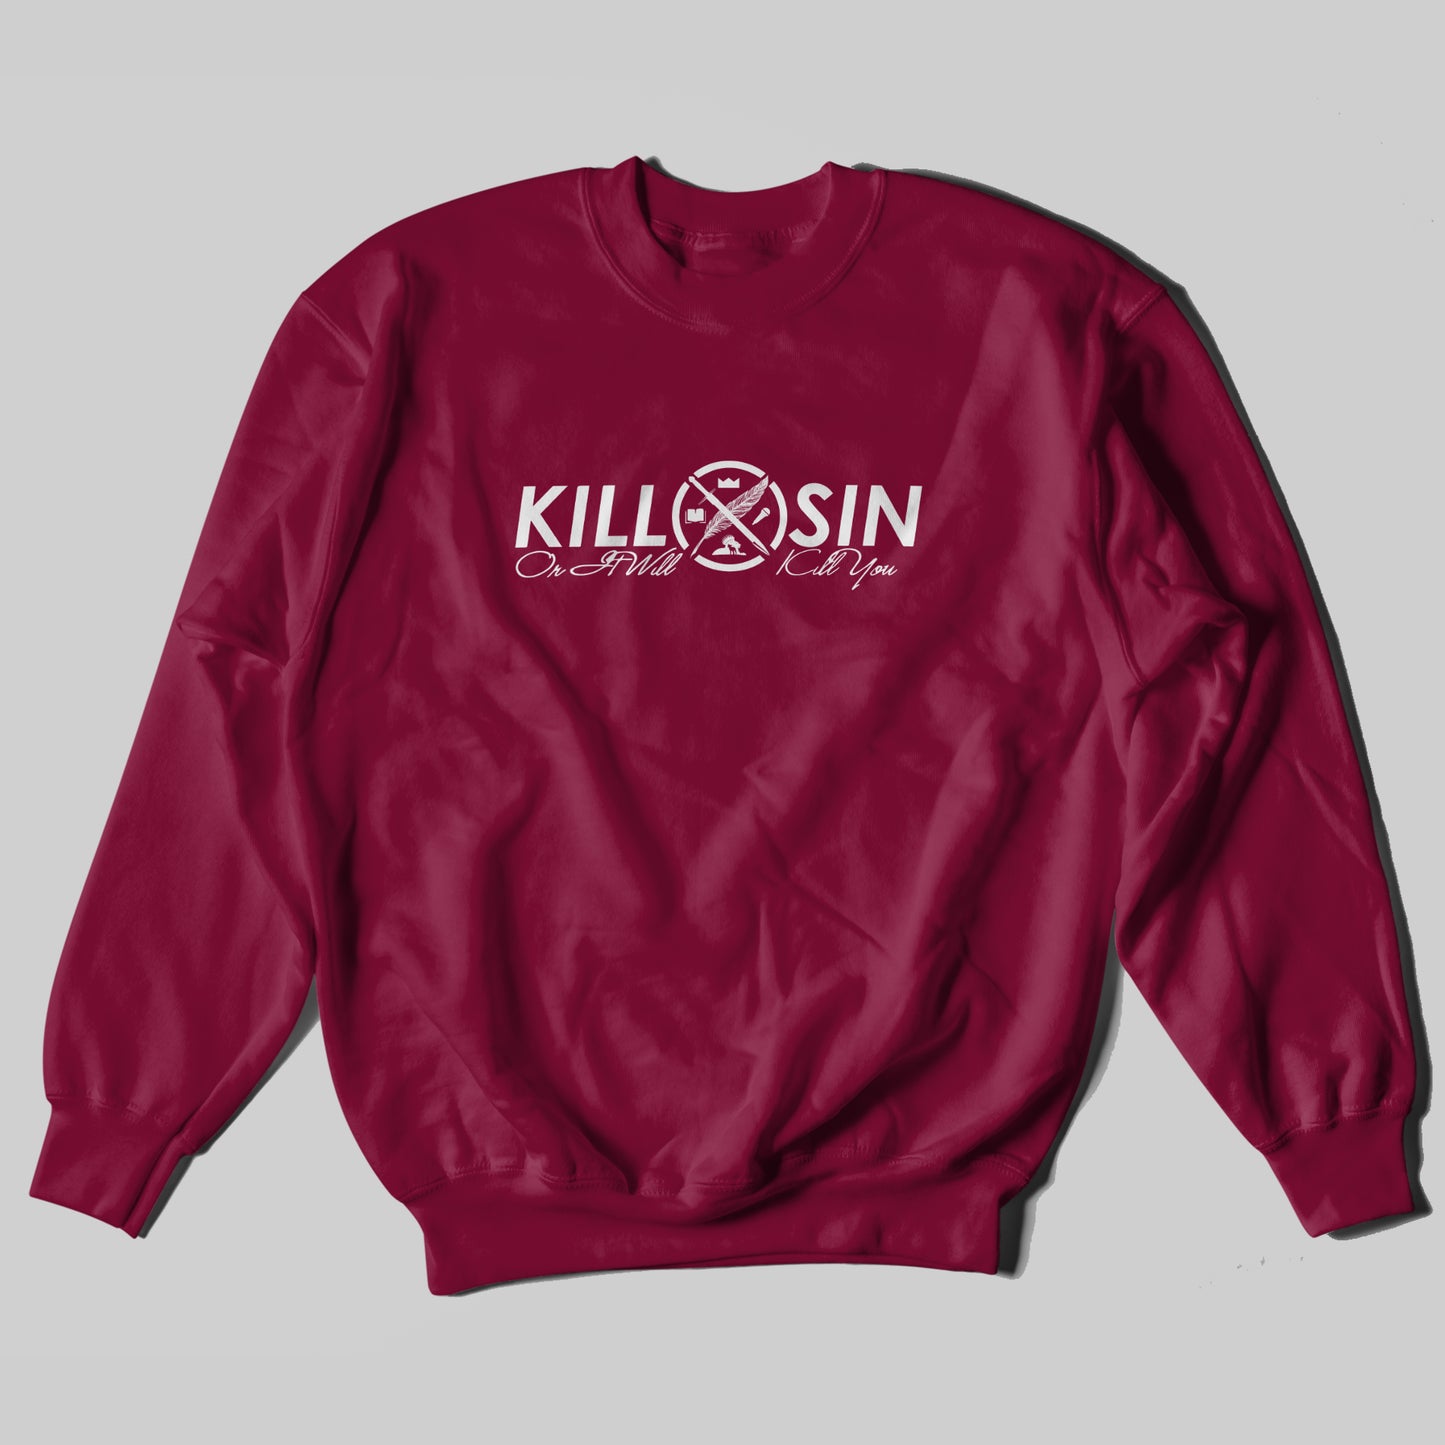 Kill Sin - Sweatshirt